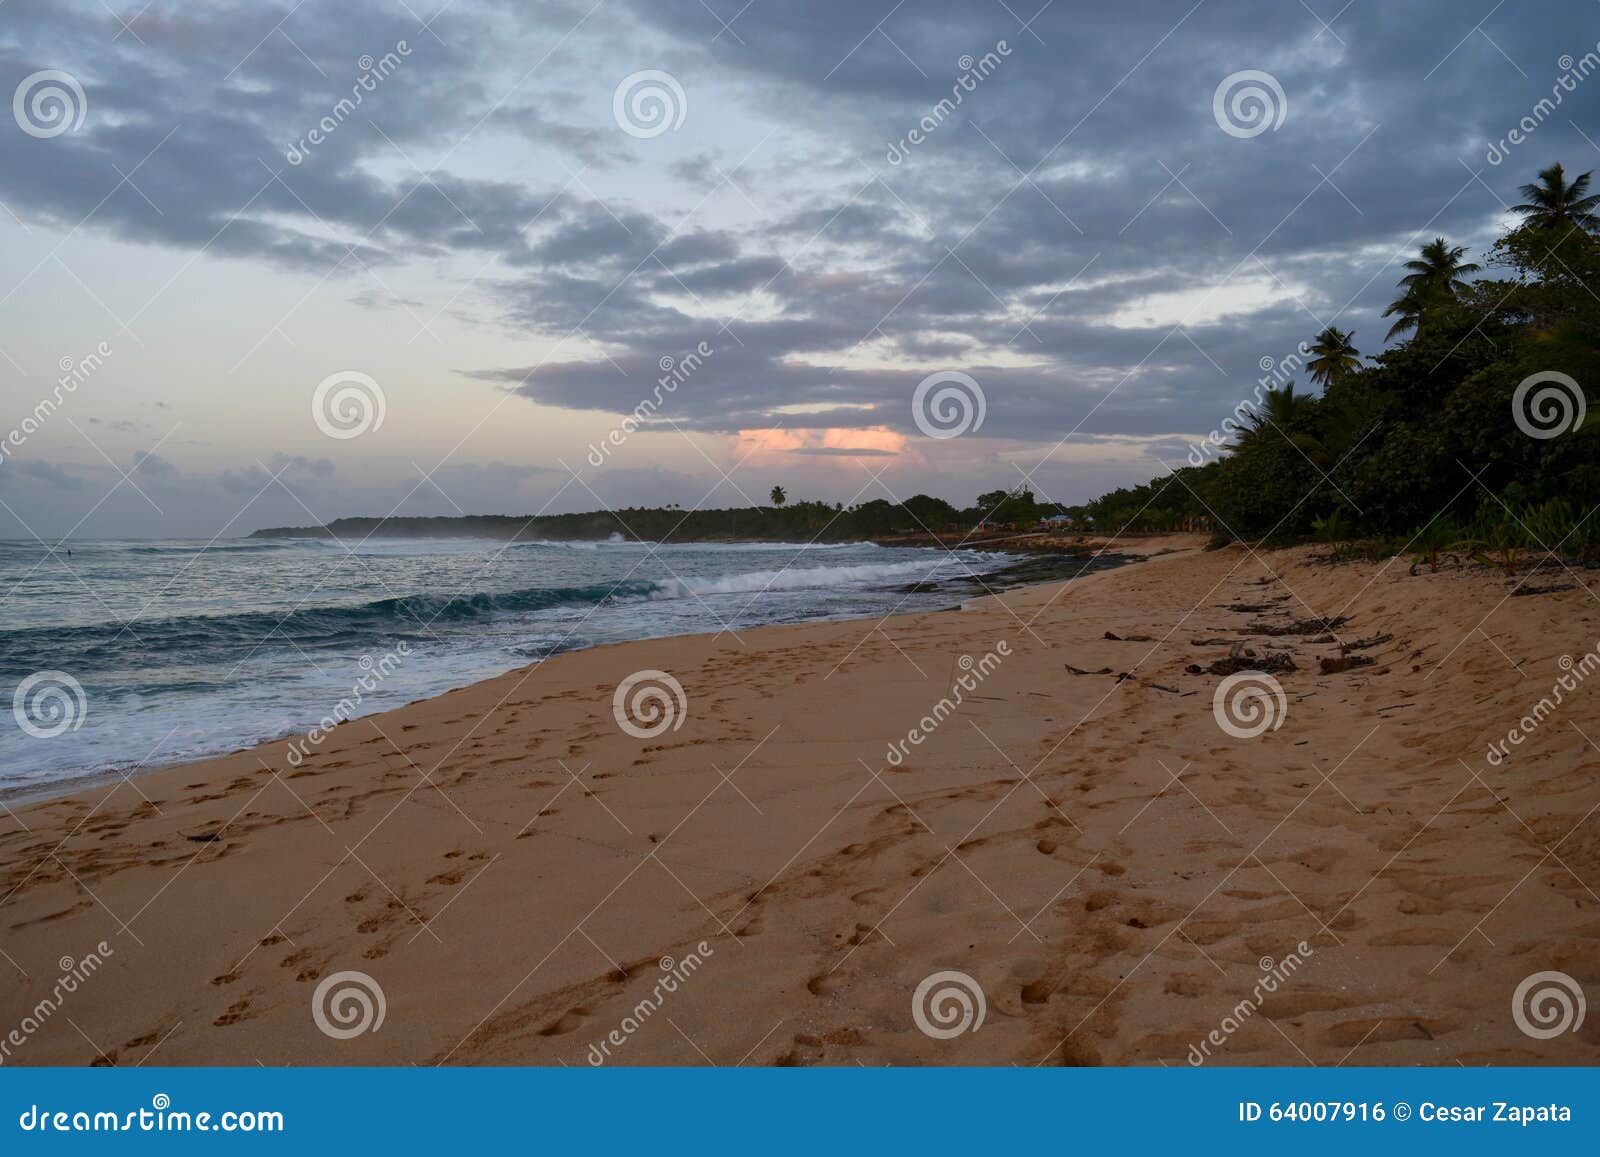 sunset at los tubos beach, manati, puerto rico